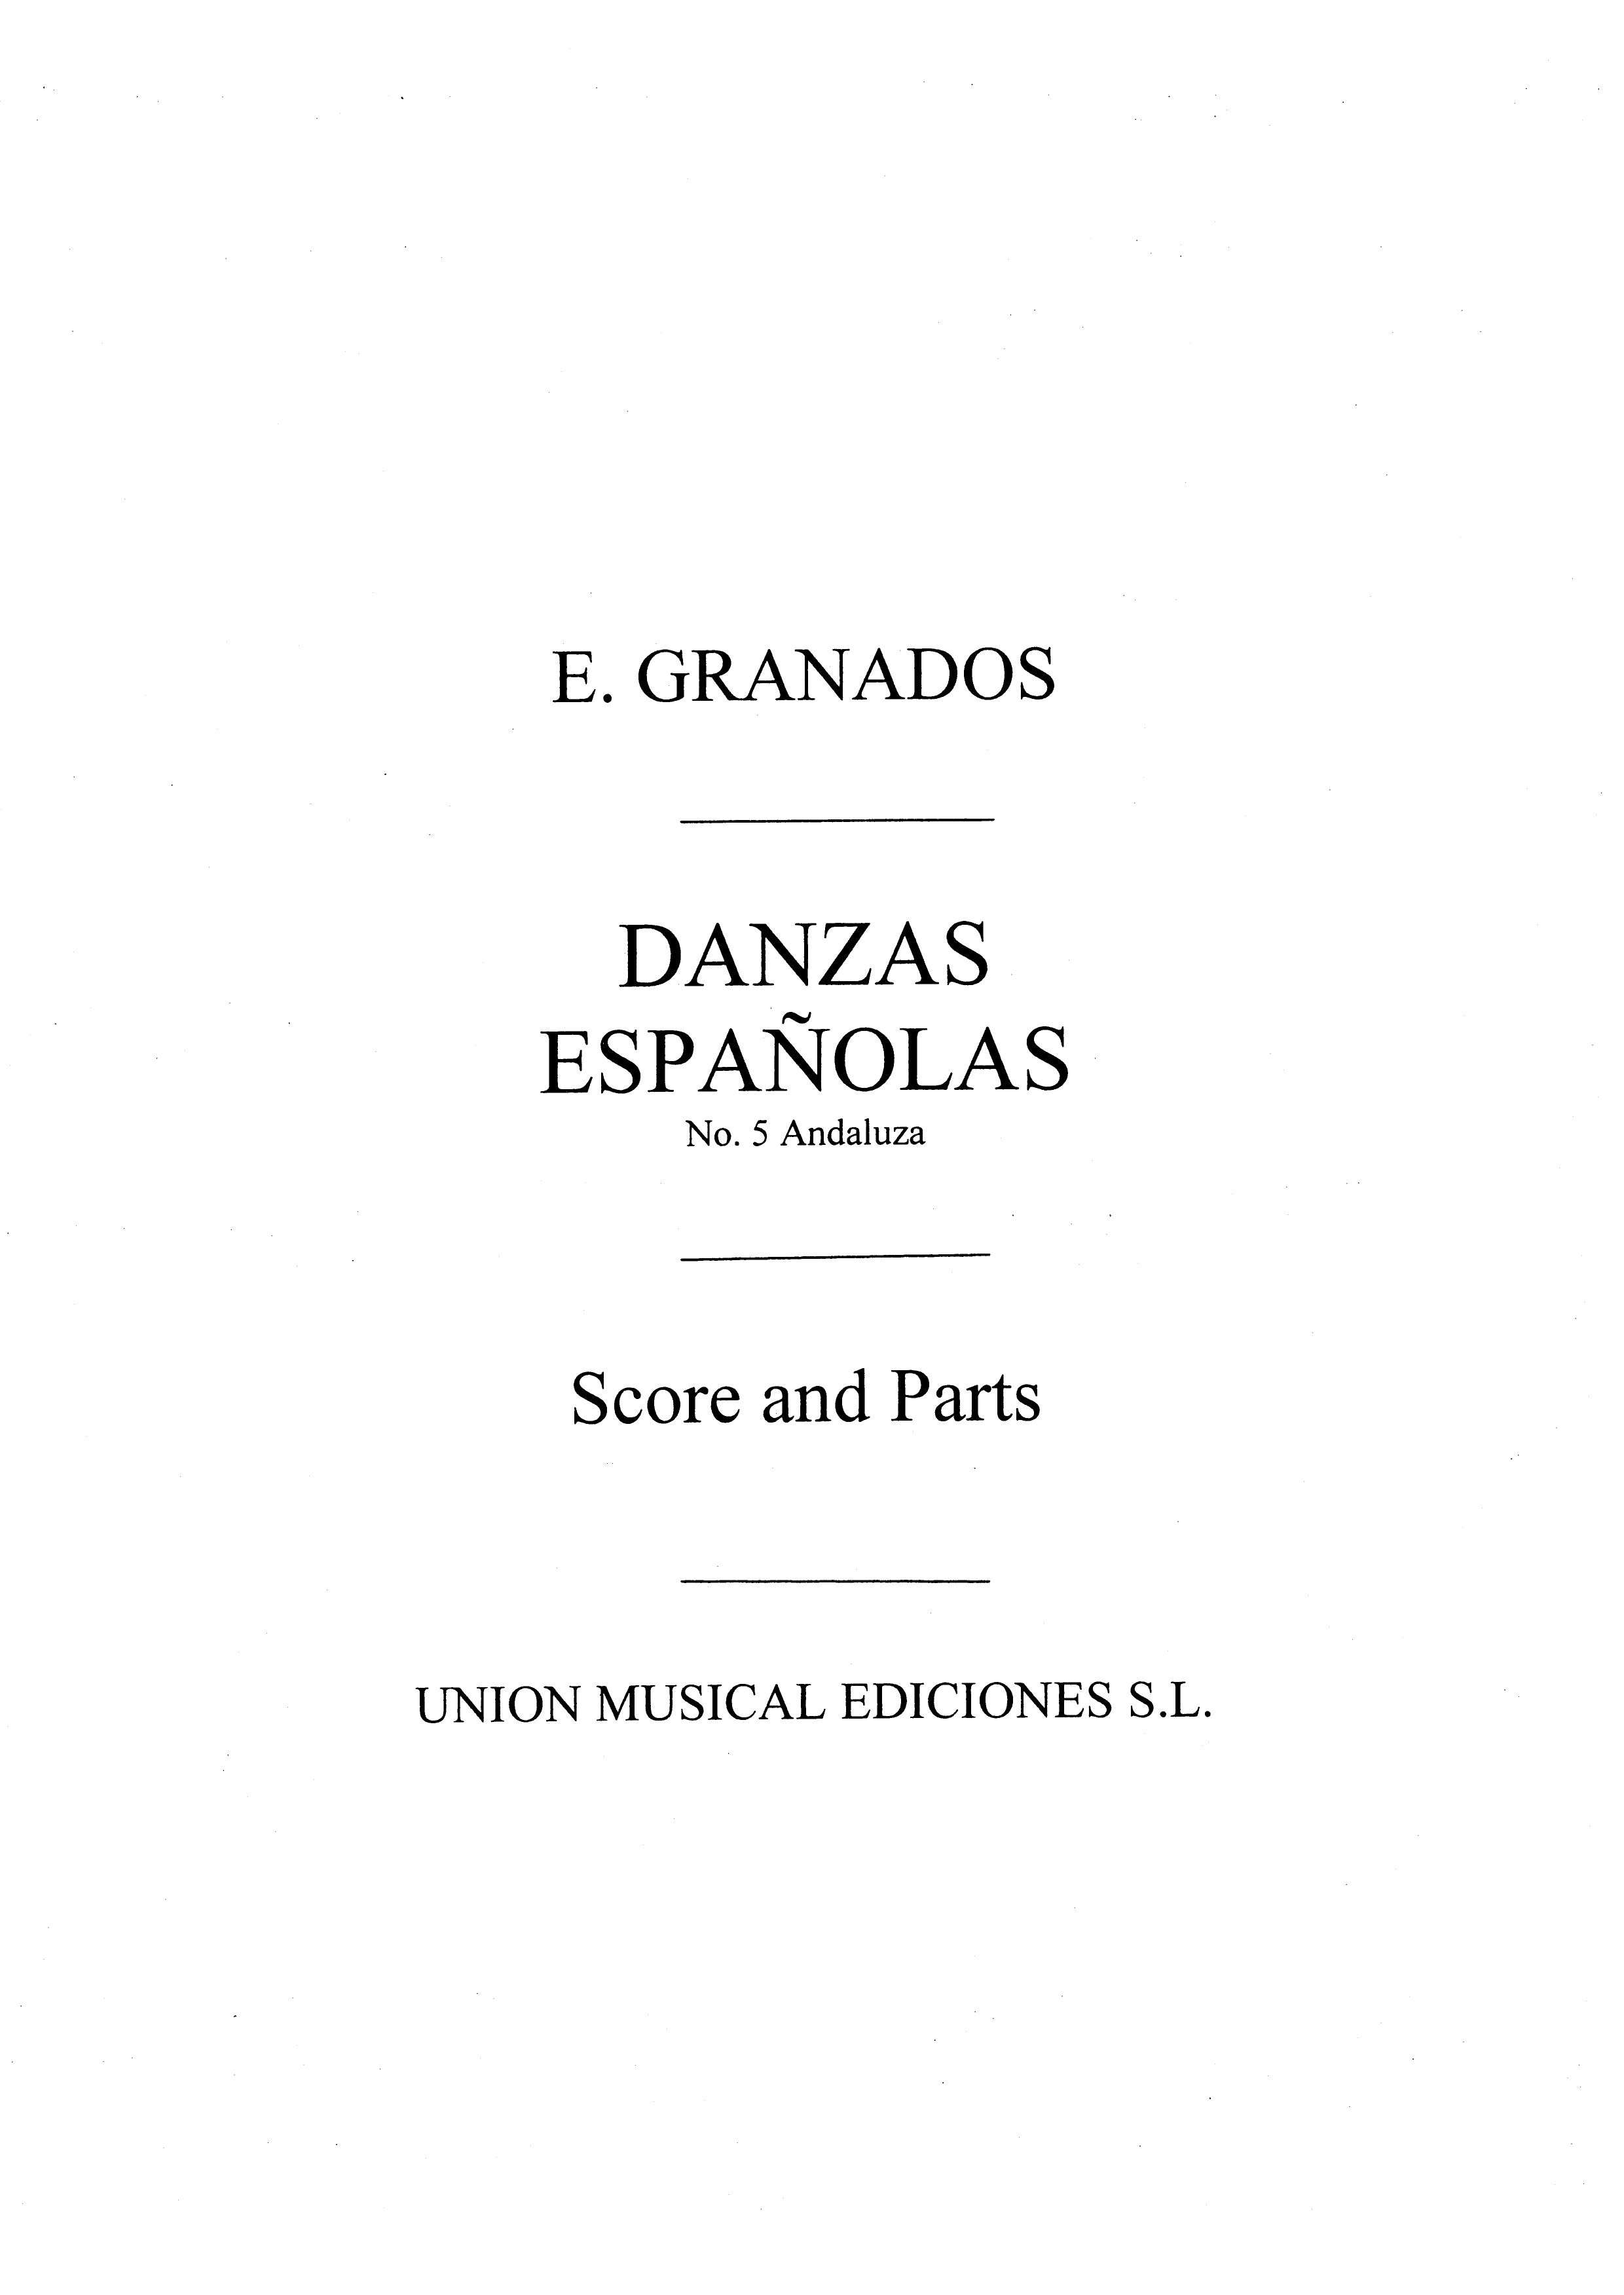 Granados: Danza Espanolas No.5 Andaluza for Band